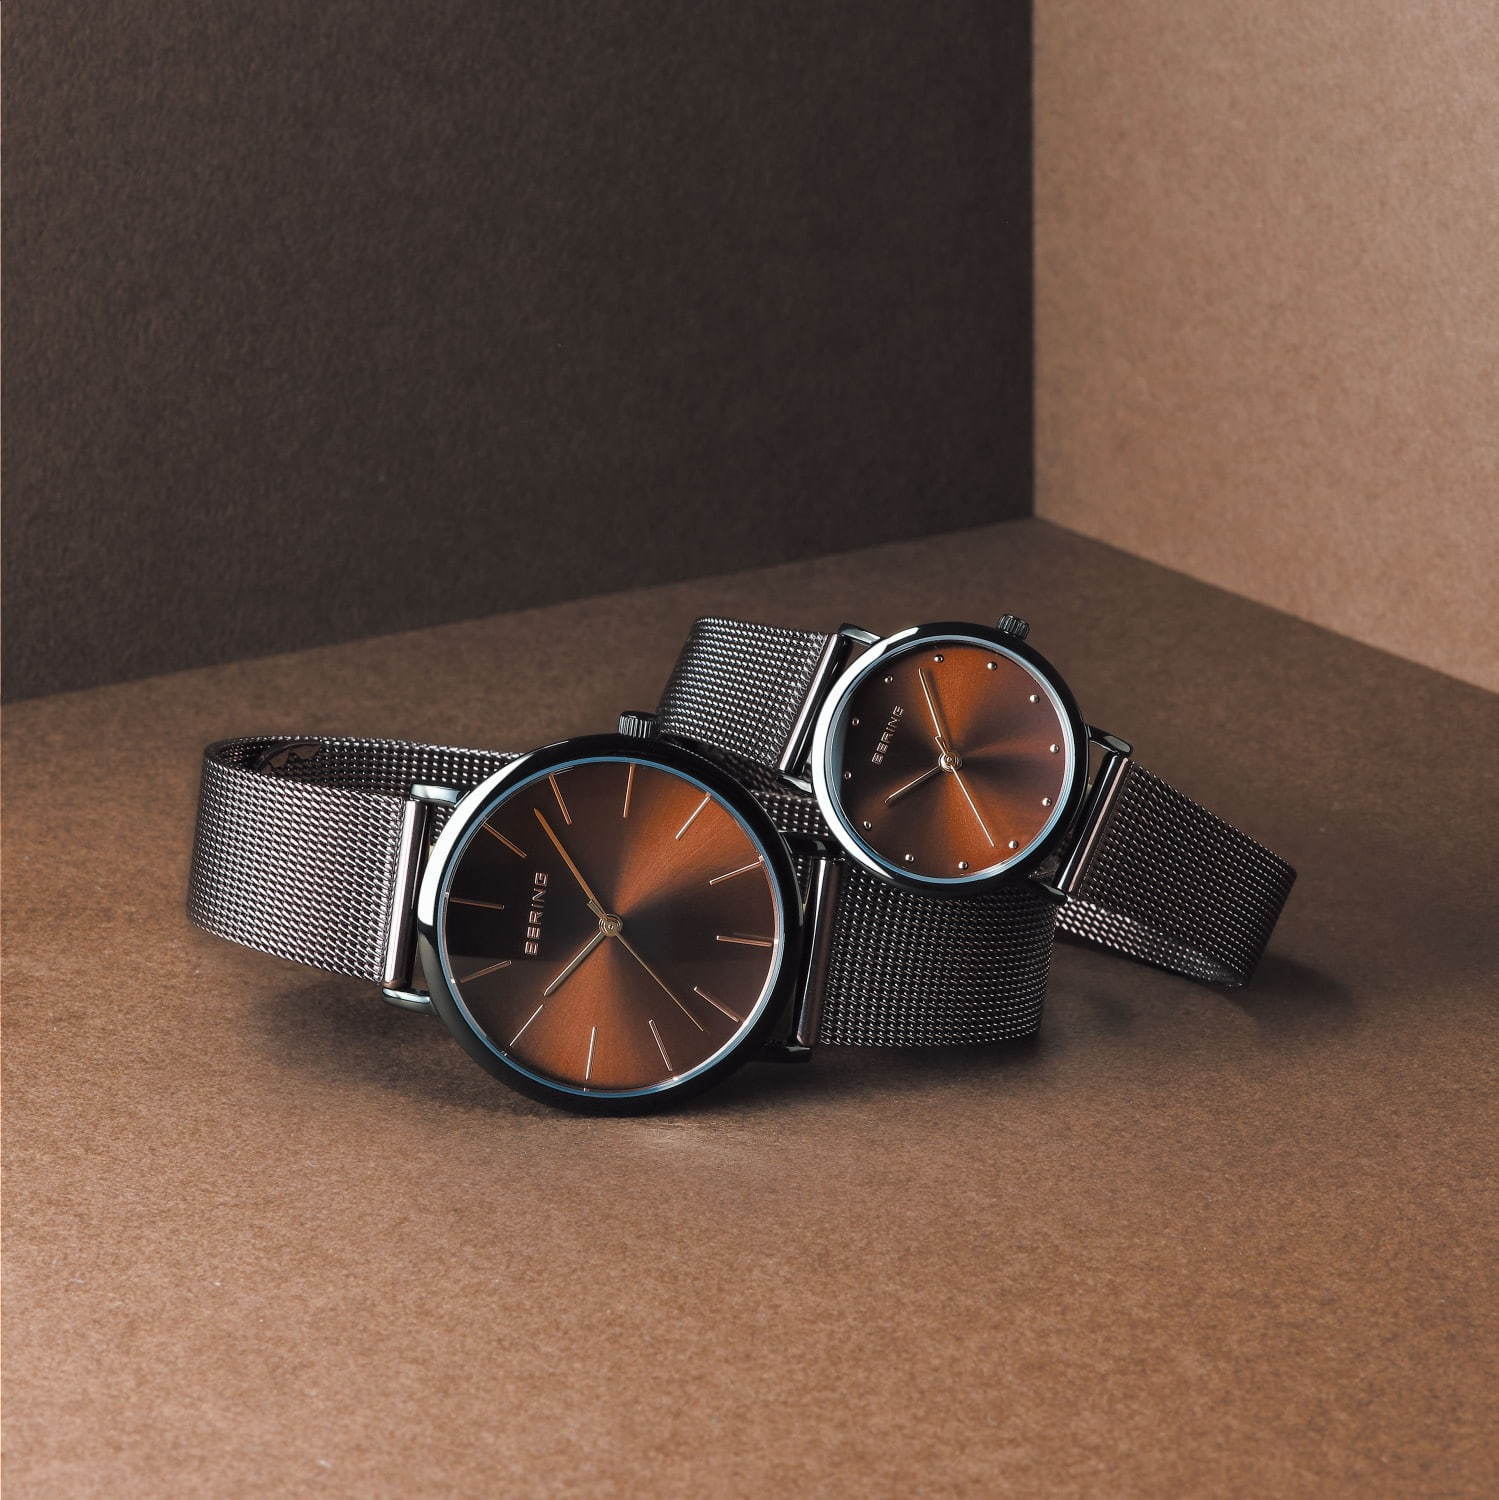 価格別「シンプルメンズ腕時計」特集、おしゃれな男性におすすめの人気